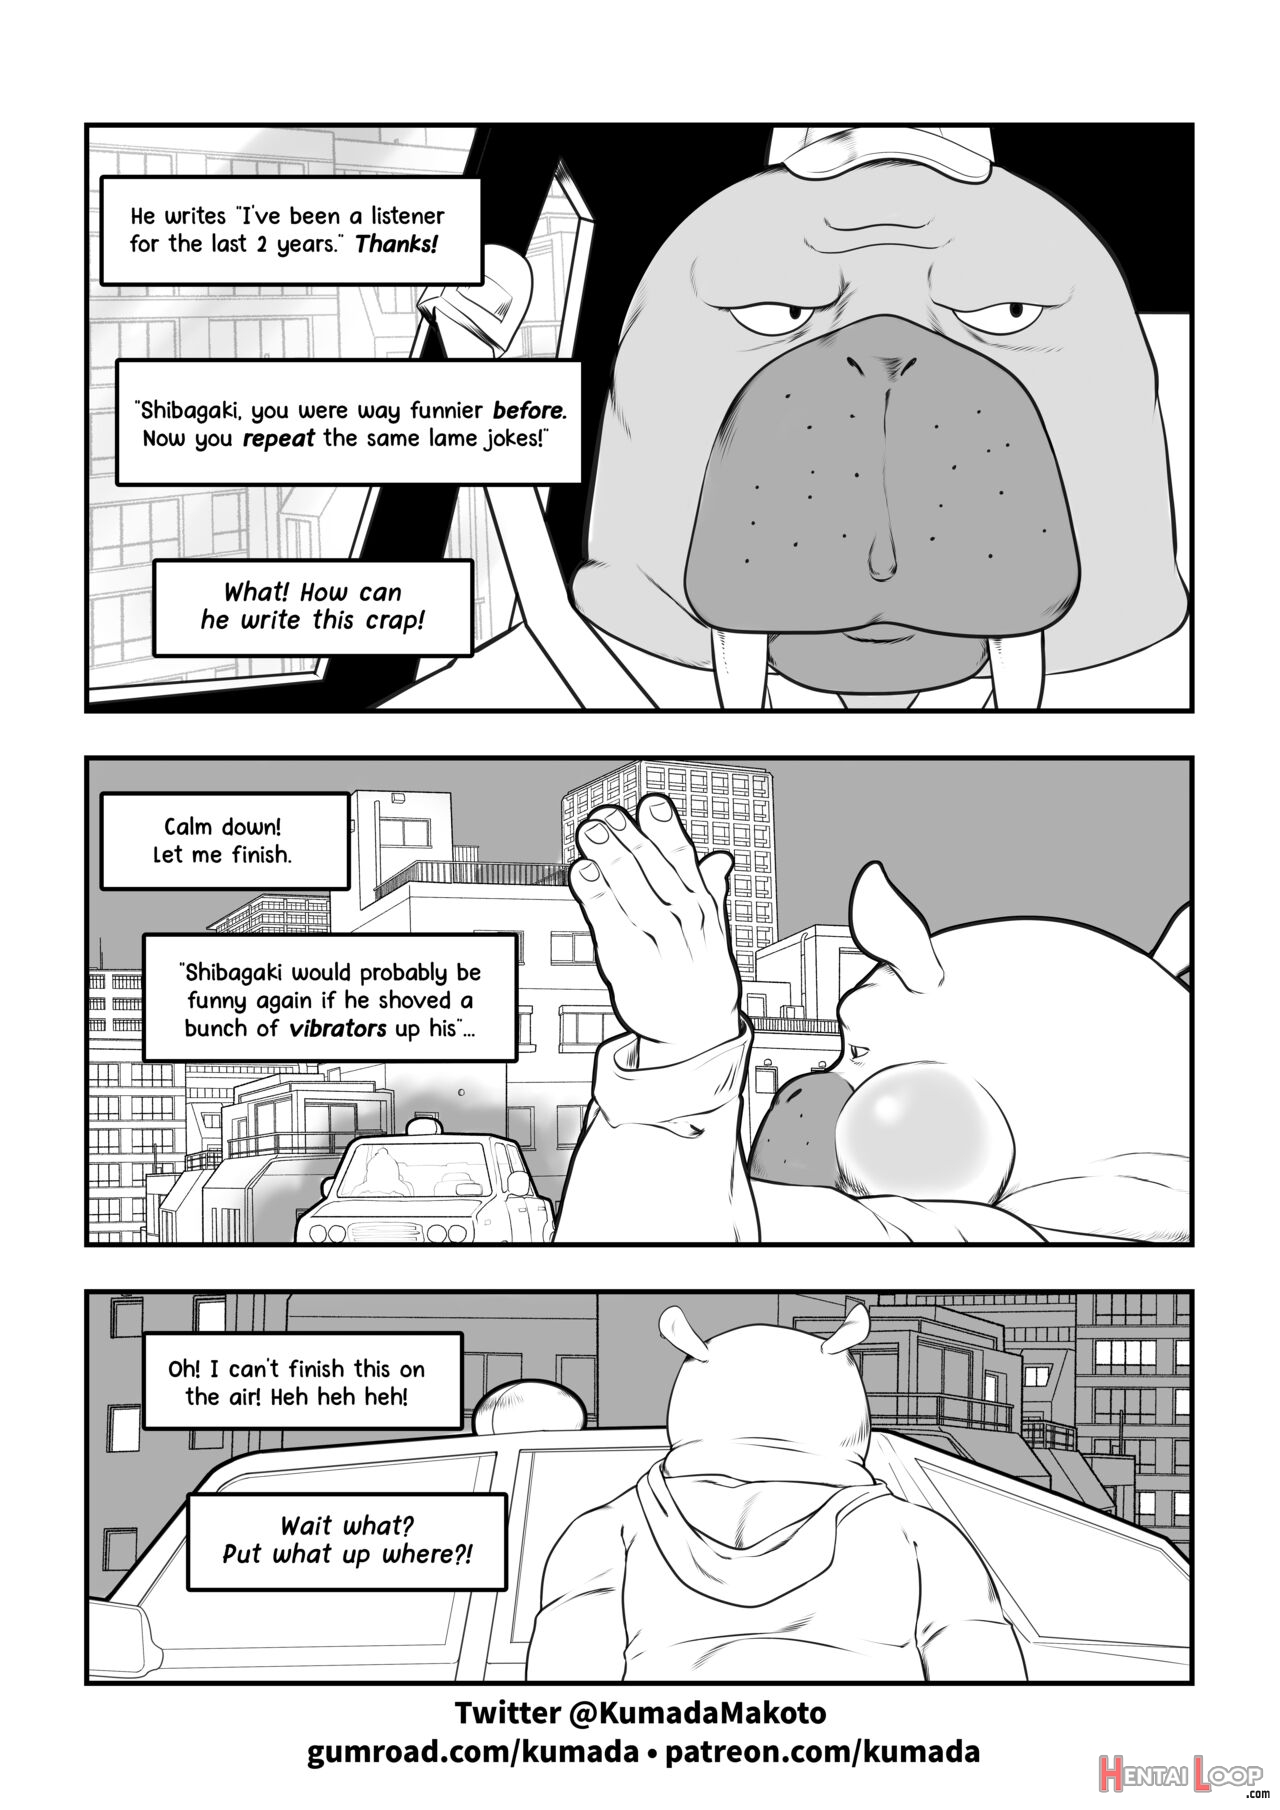 Odd Story #1 page 3